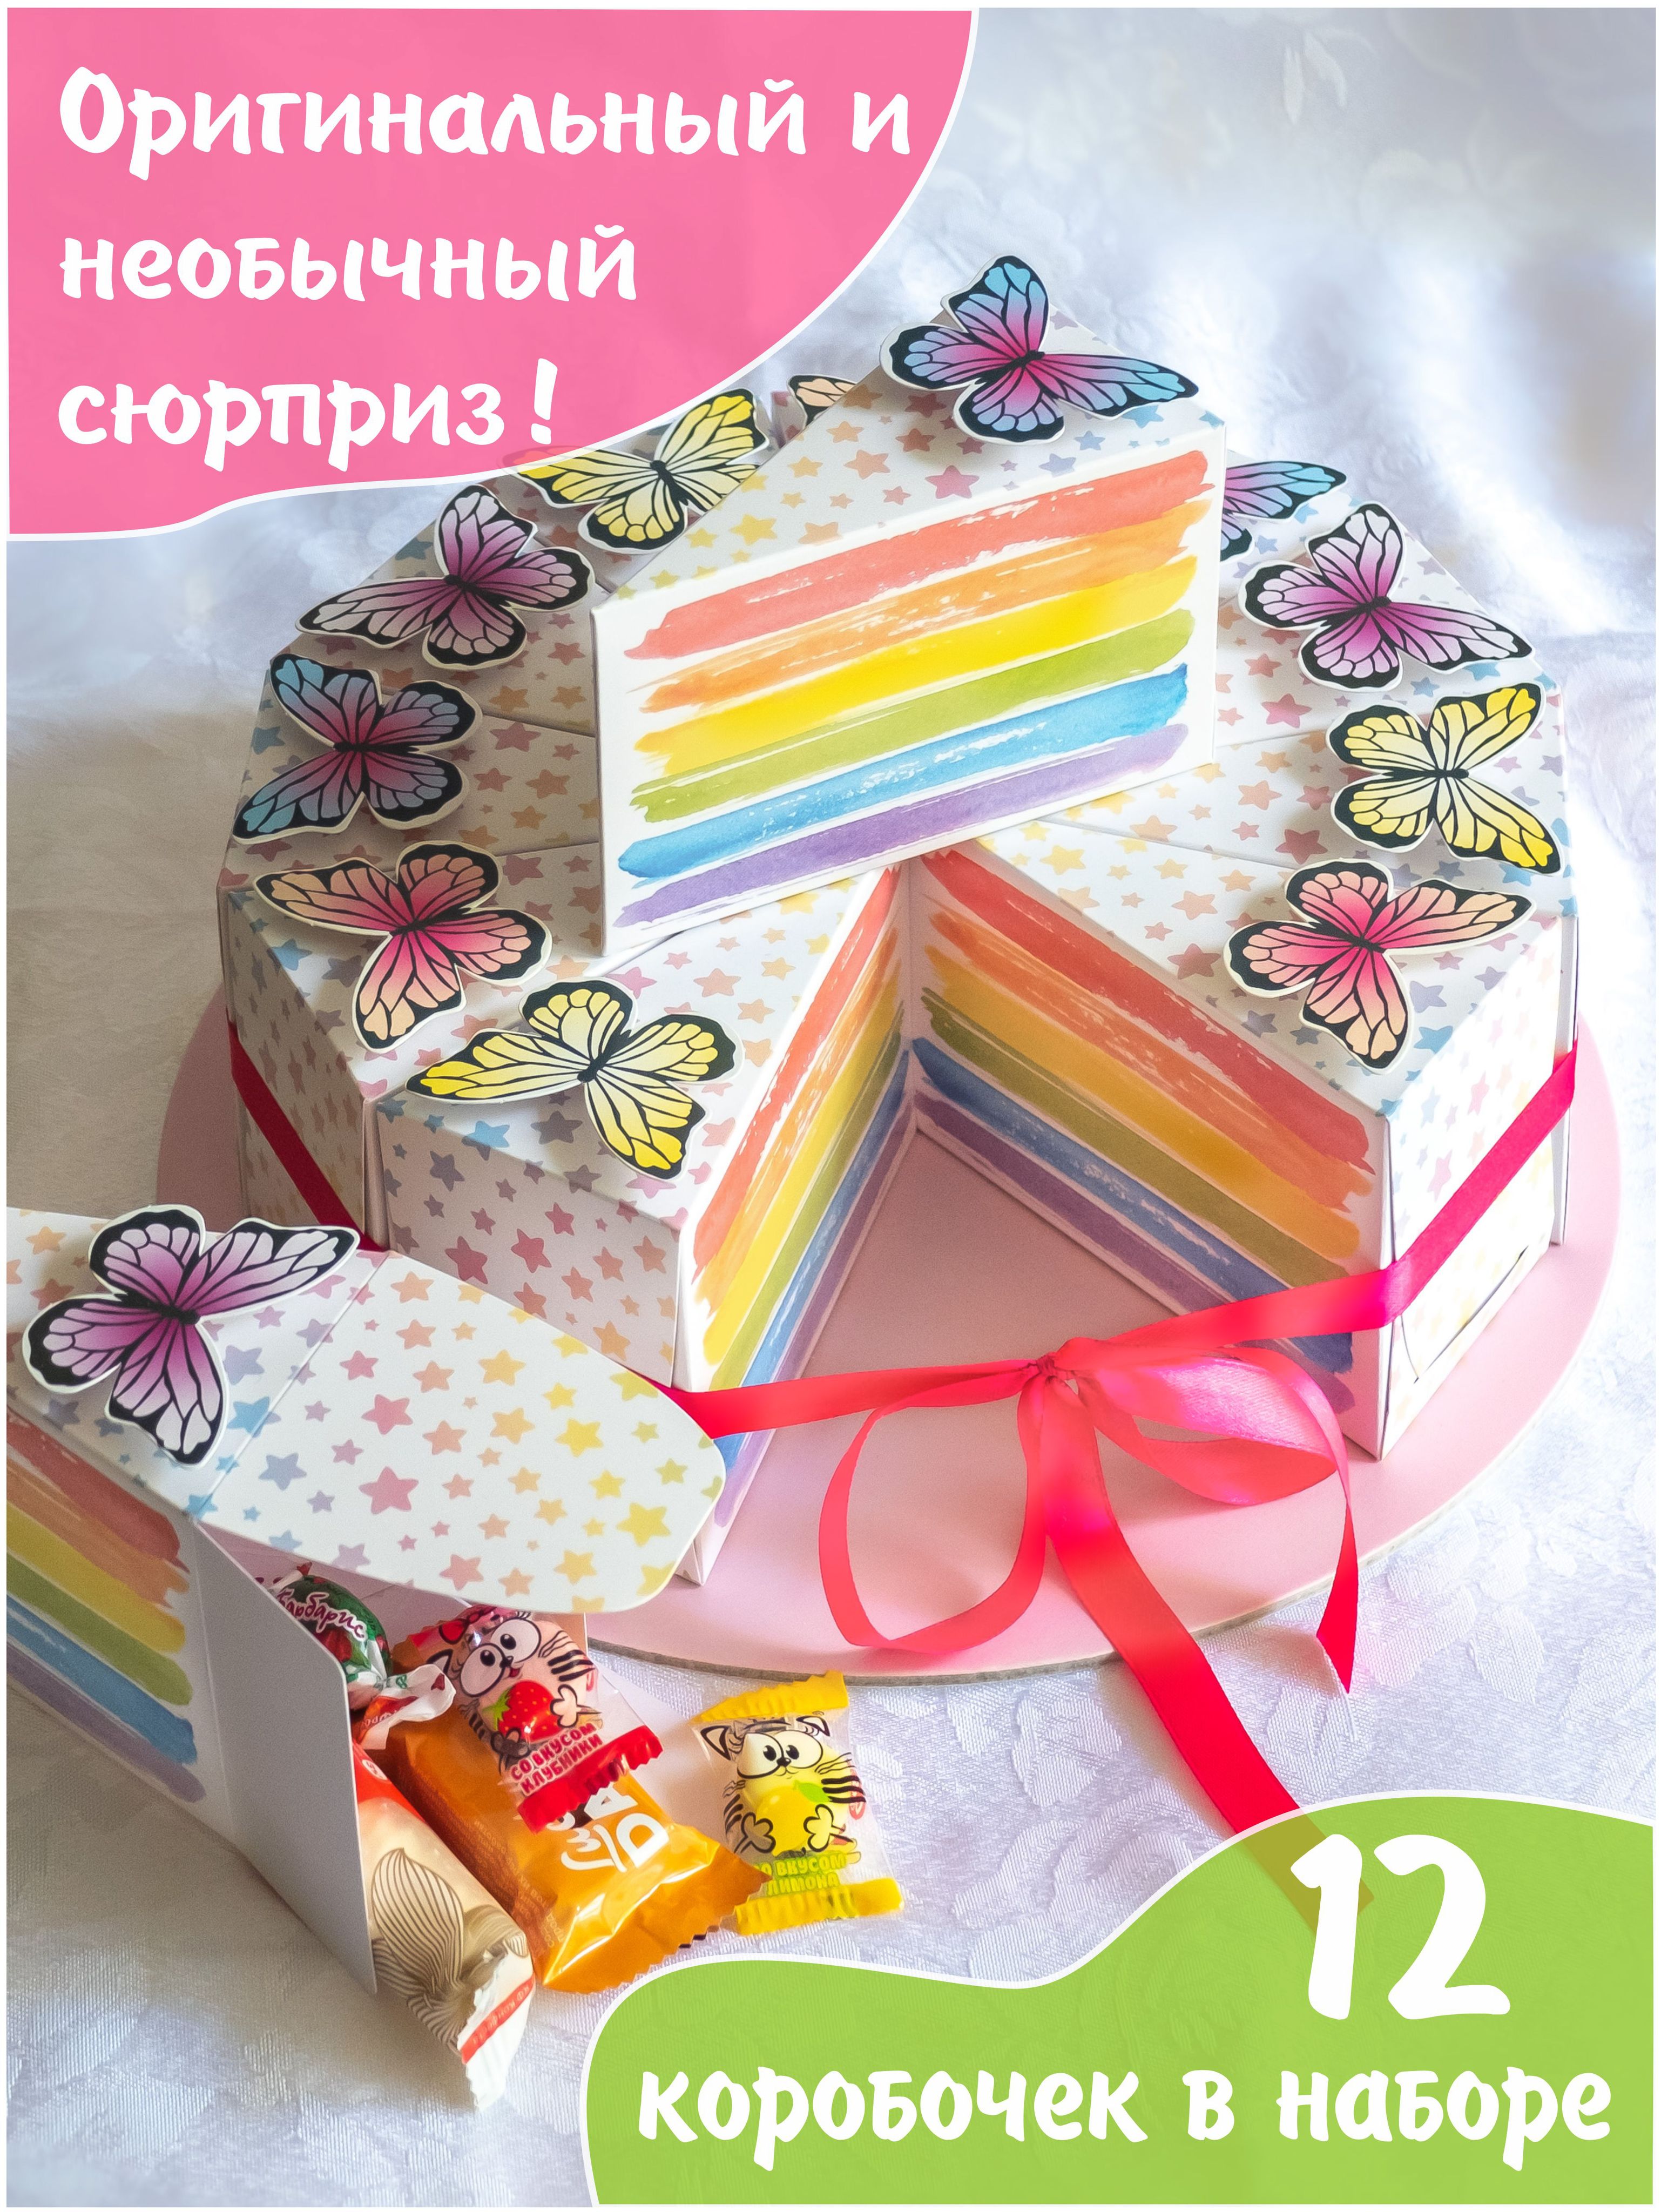 Торт маме на День рождения на заказ в СПБ по доступной цене